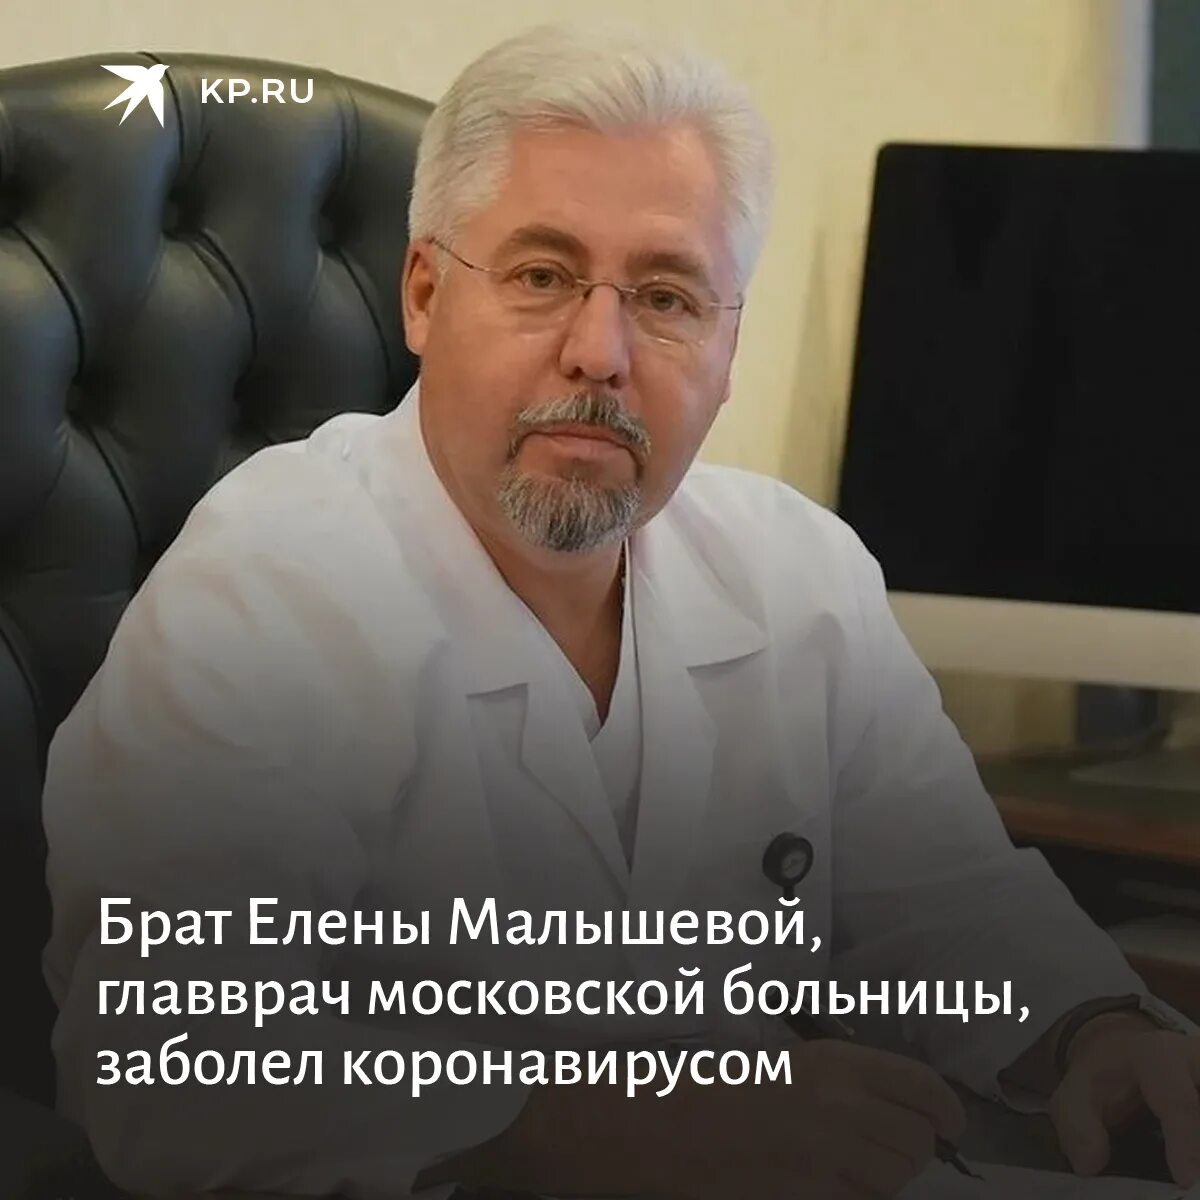 Главный врач Боткинской больницы в Москве.